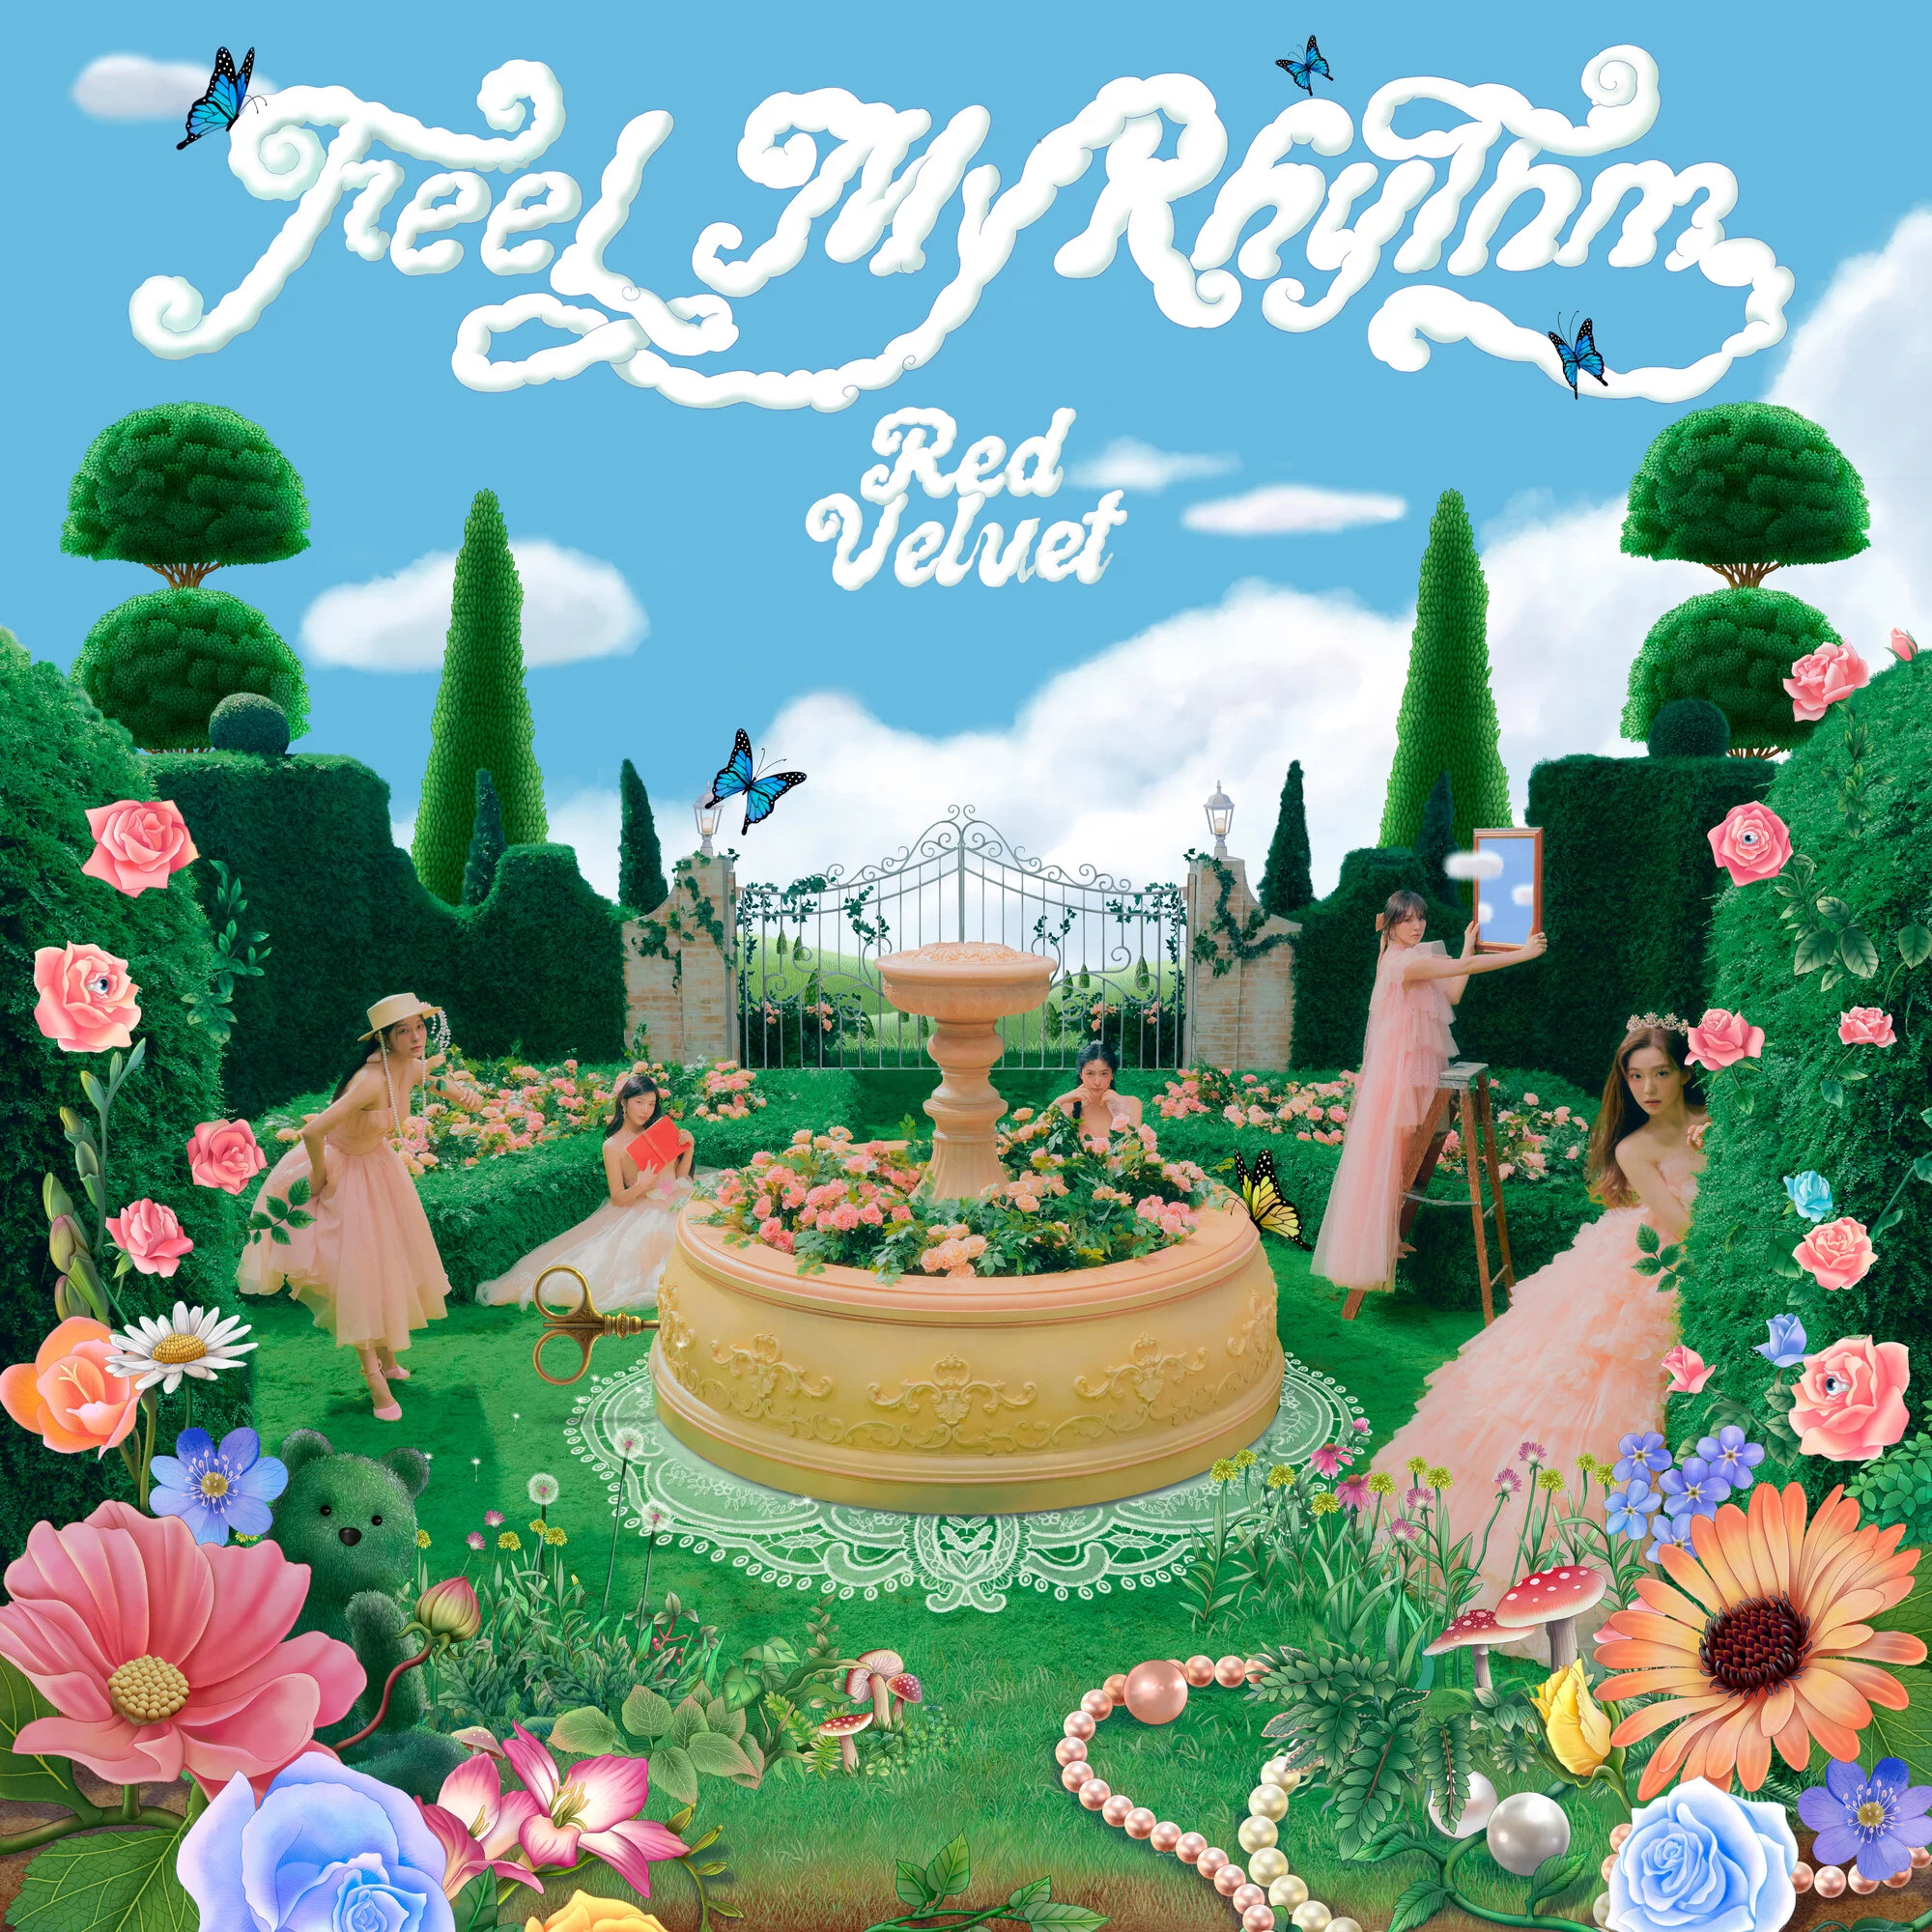 Red Velvet - RUSSIAN ROULETTE (3rd Mini Album) CD+Booklet+Lyrics+Photocard